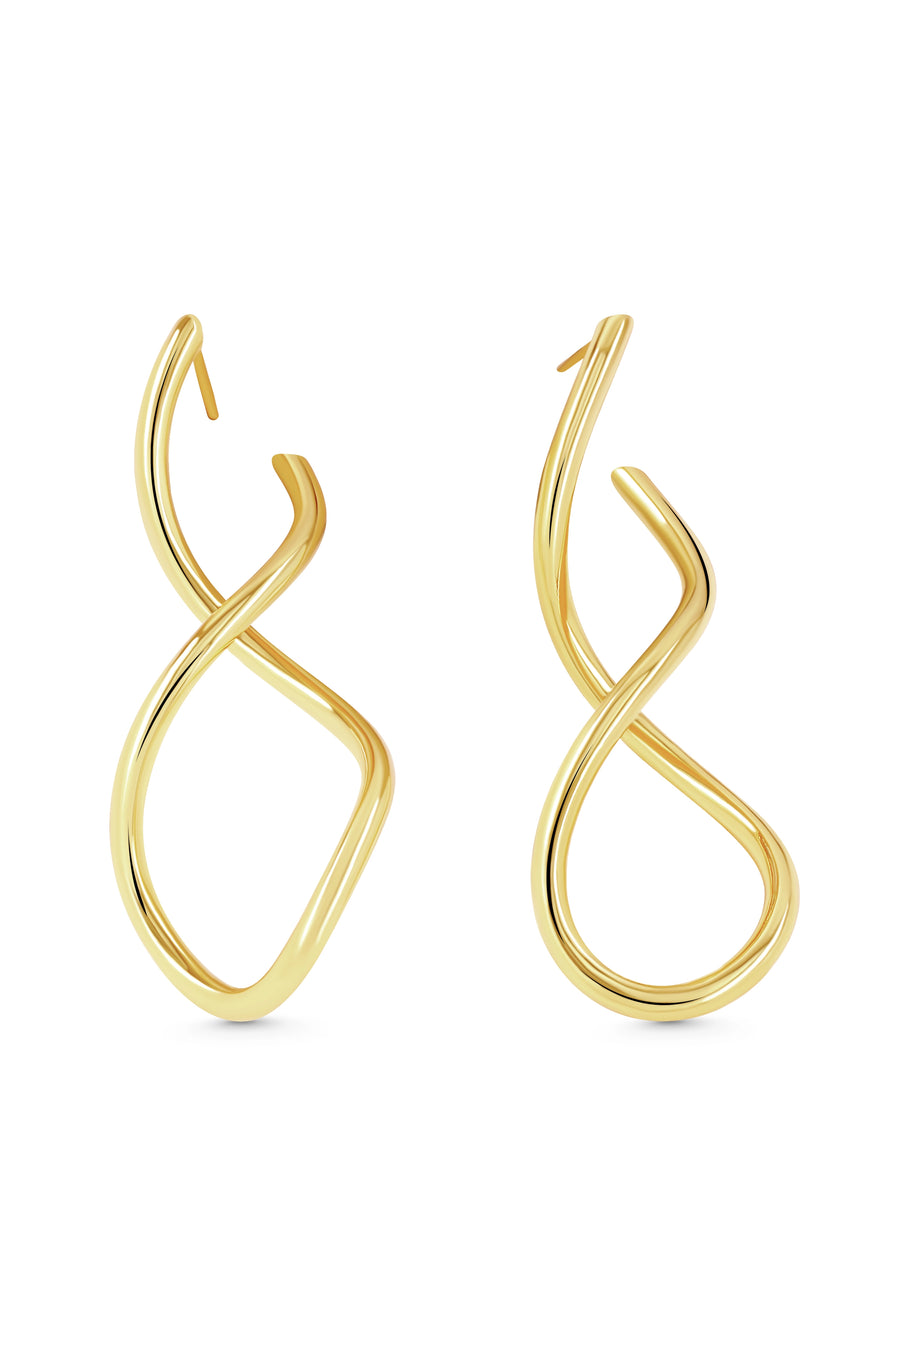 SAGE Earrings. Twisted line earrings, 18K gold vermeil, handmade, hypoallergenic, water-resistant